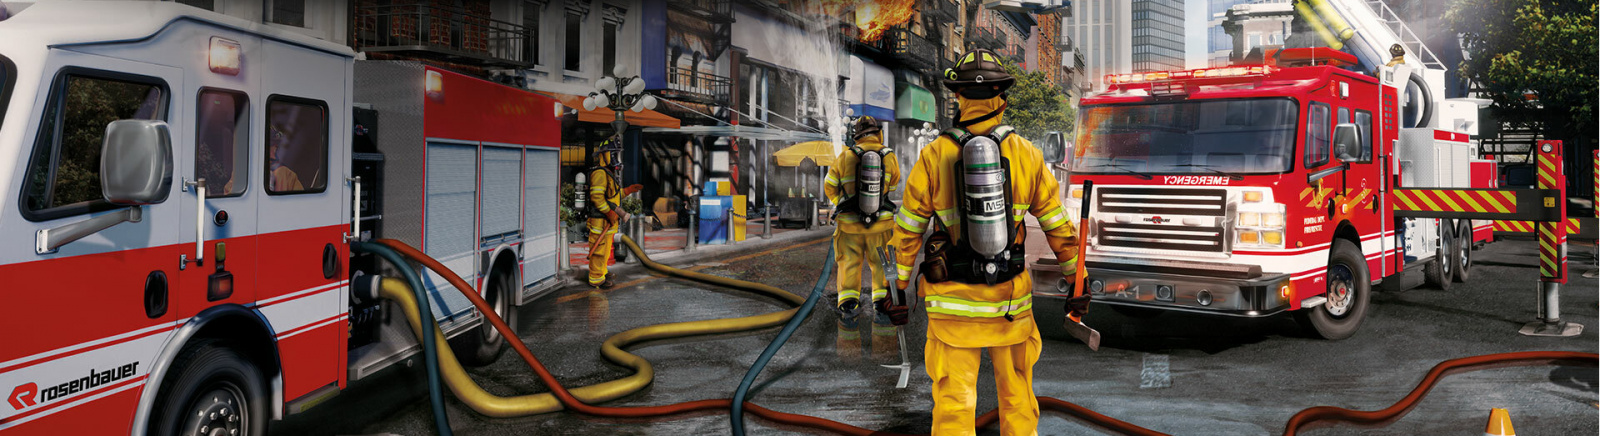 Дата выхода Firefighting Simulator - The Squad  на PC, PS5 и Xbox Series X/S в России и во всем мире